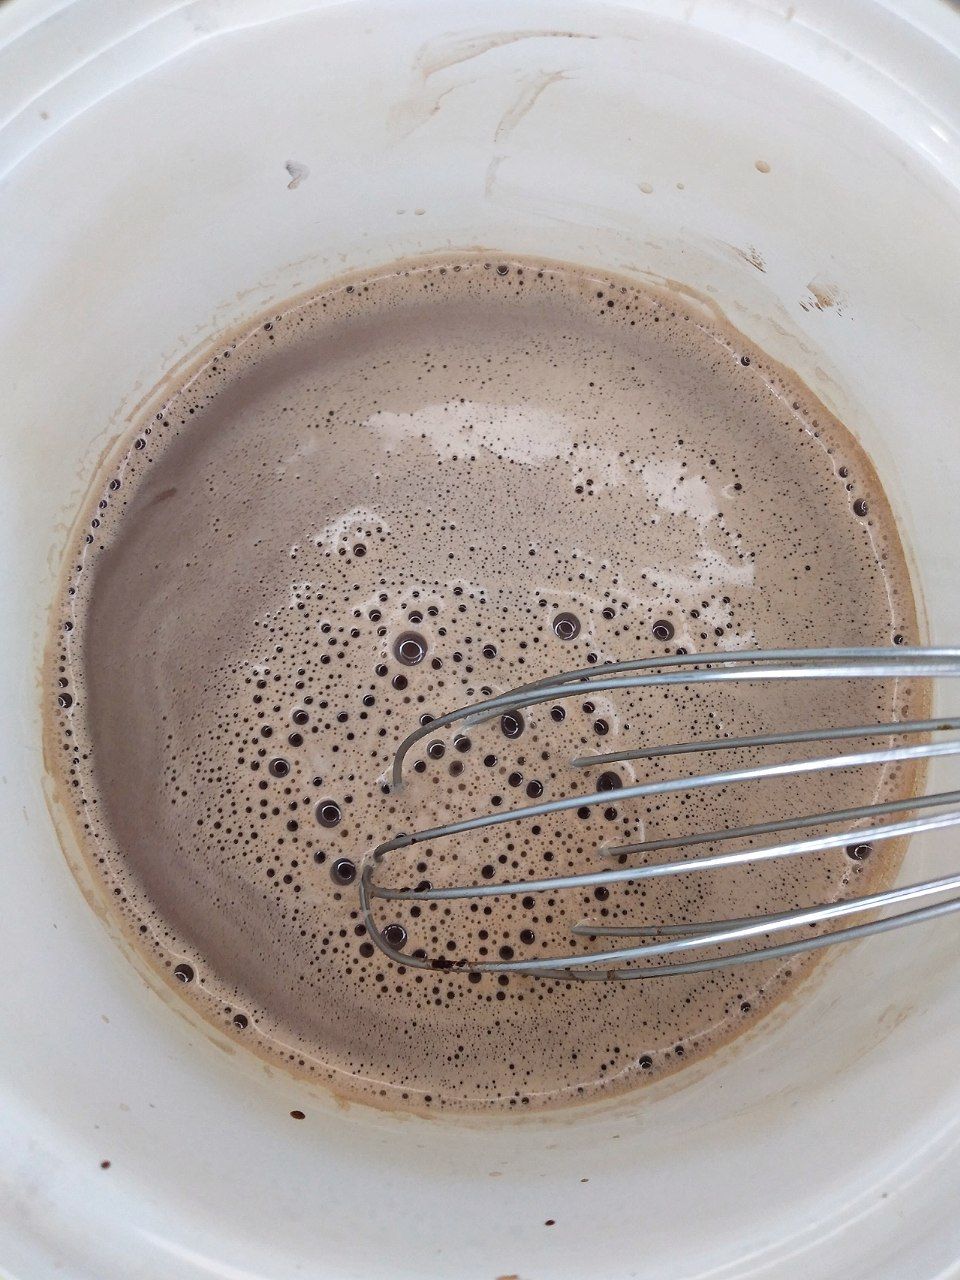 Как варить какао на молоке: проверенный рецепт